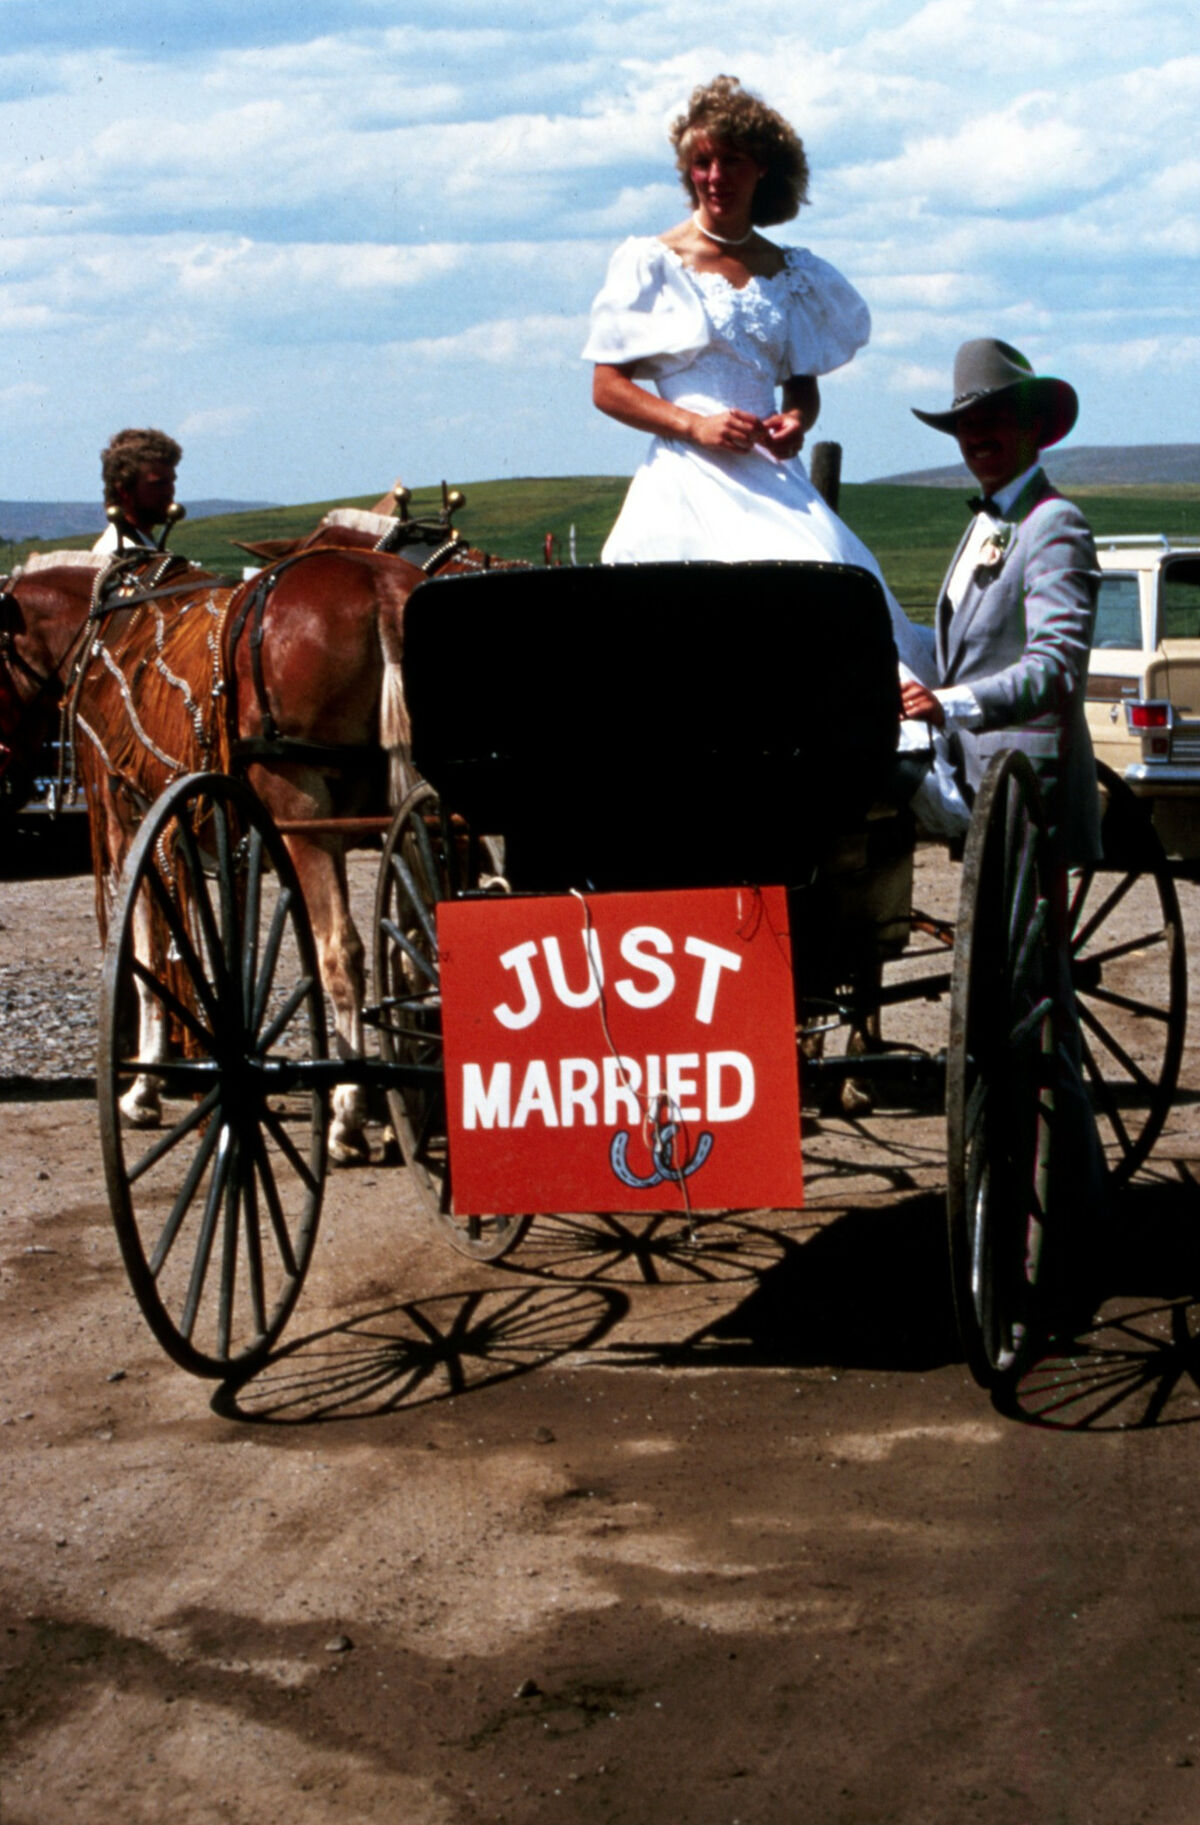 Carl and Karen Patton’s wedding rickshaw. Taken by Janie Tippett.